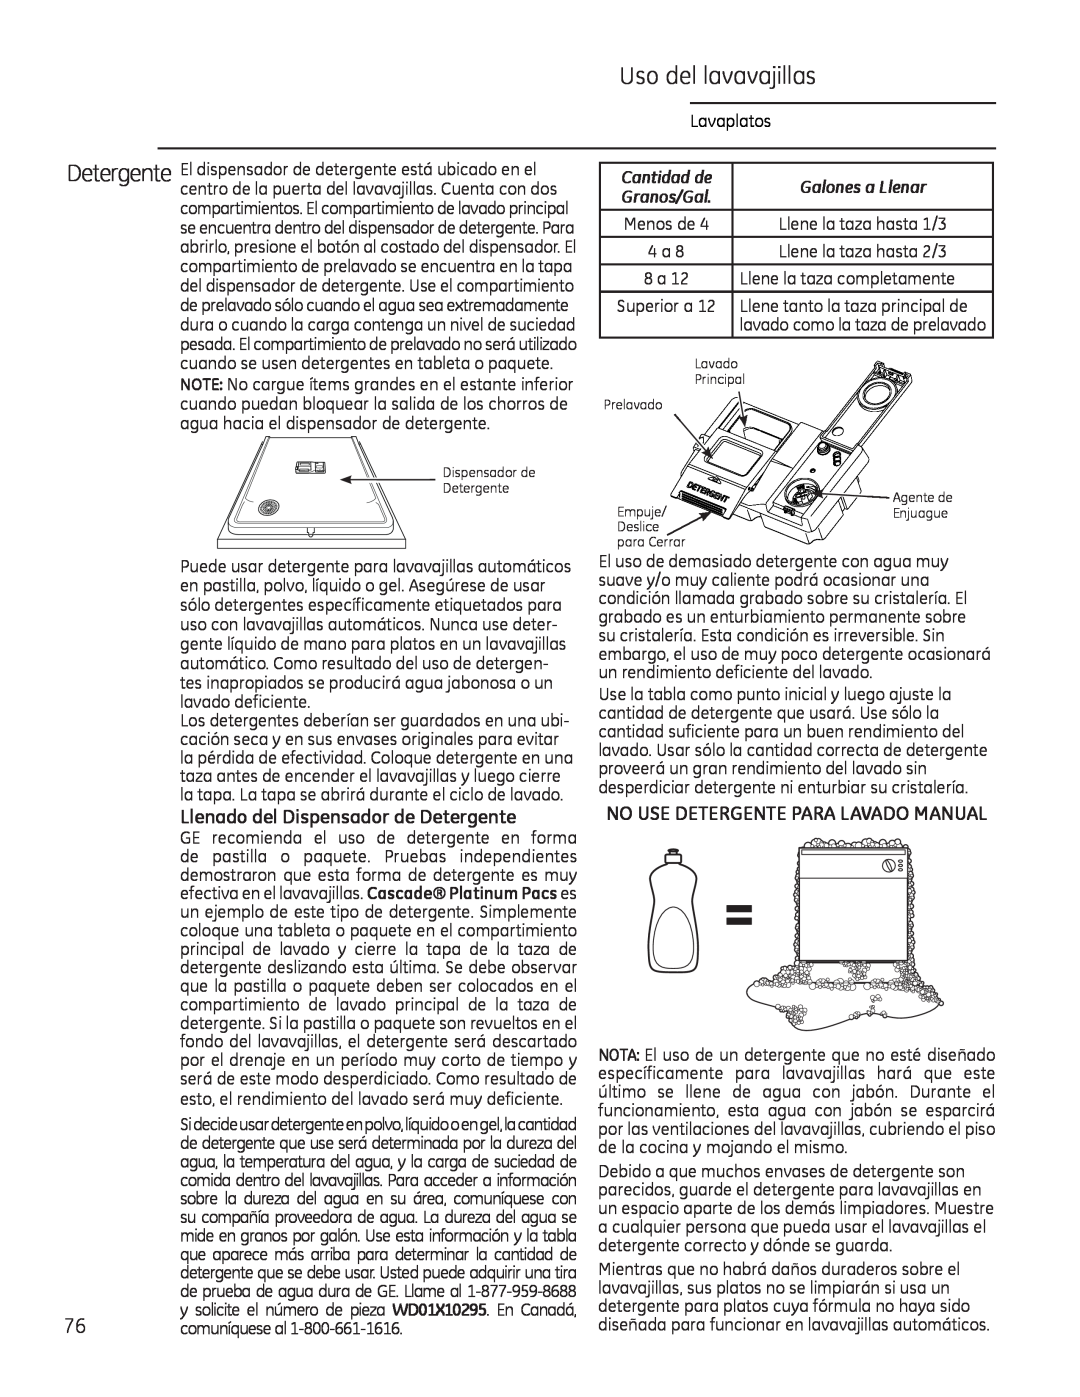 GE Monogram 49-55086 Llenado del Dispensador de Detergente, No Use Detergente Para Lavado Manual, Cantidad de 